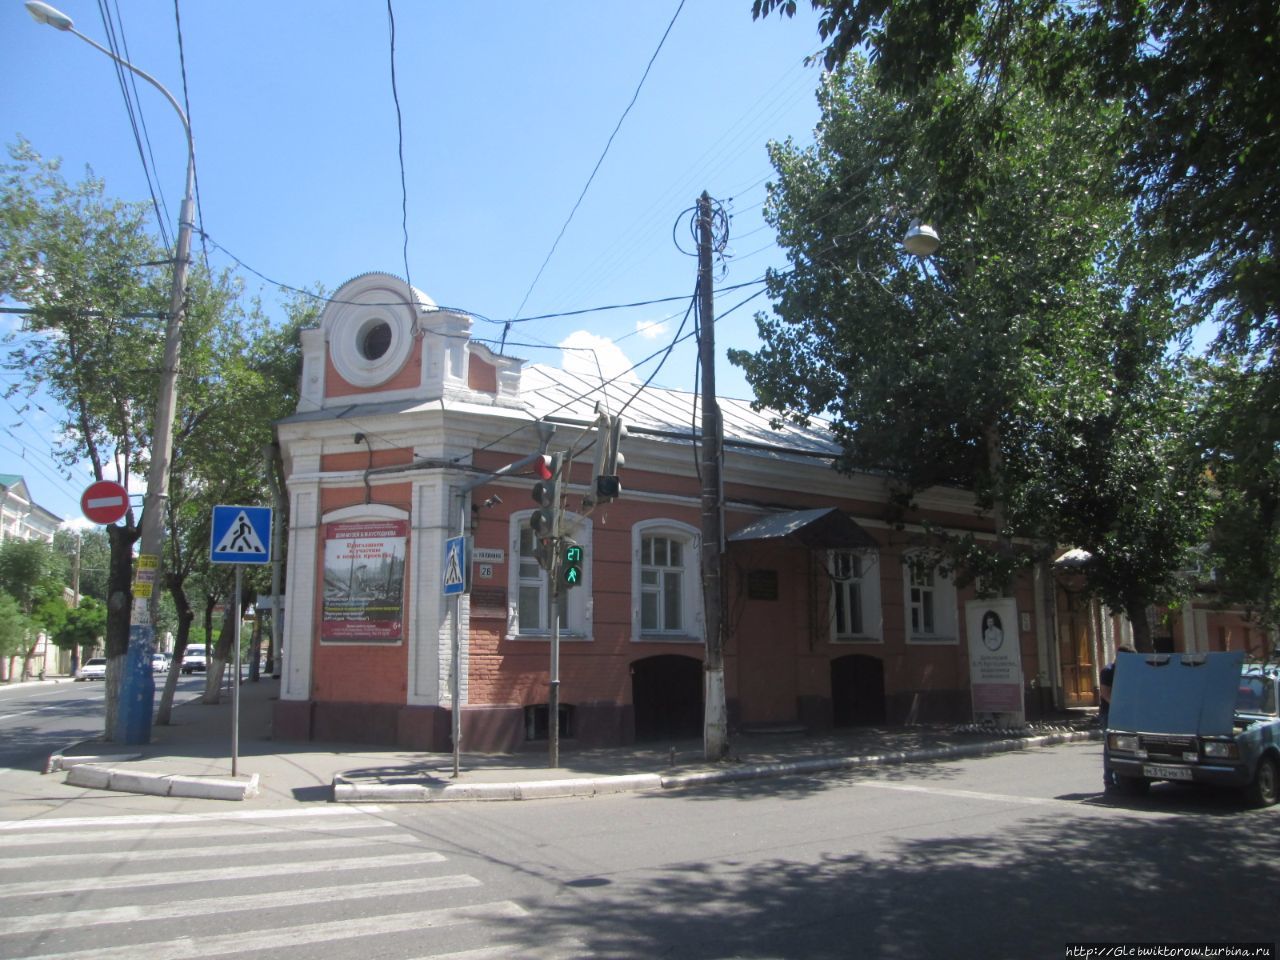 Дом-музей Кустодиева / Kustodiev museum